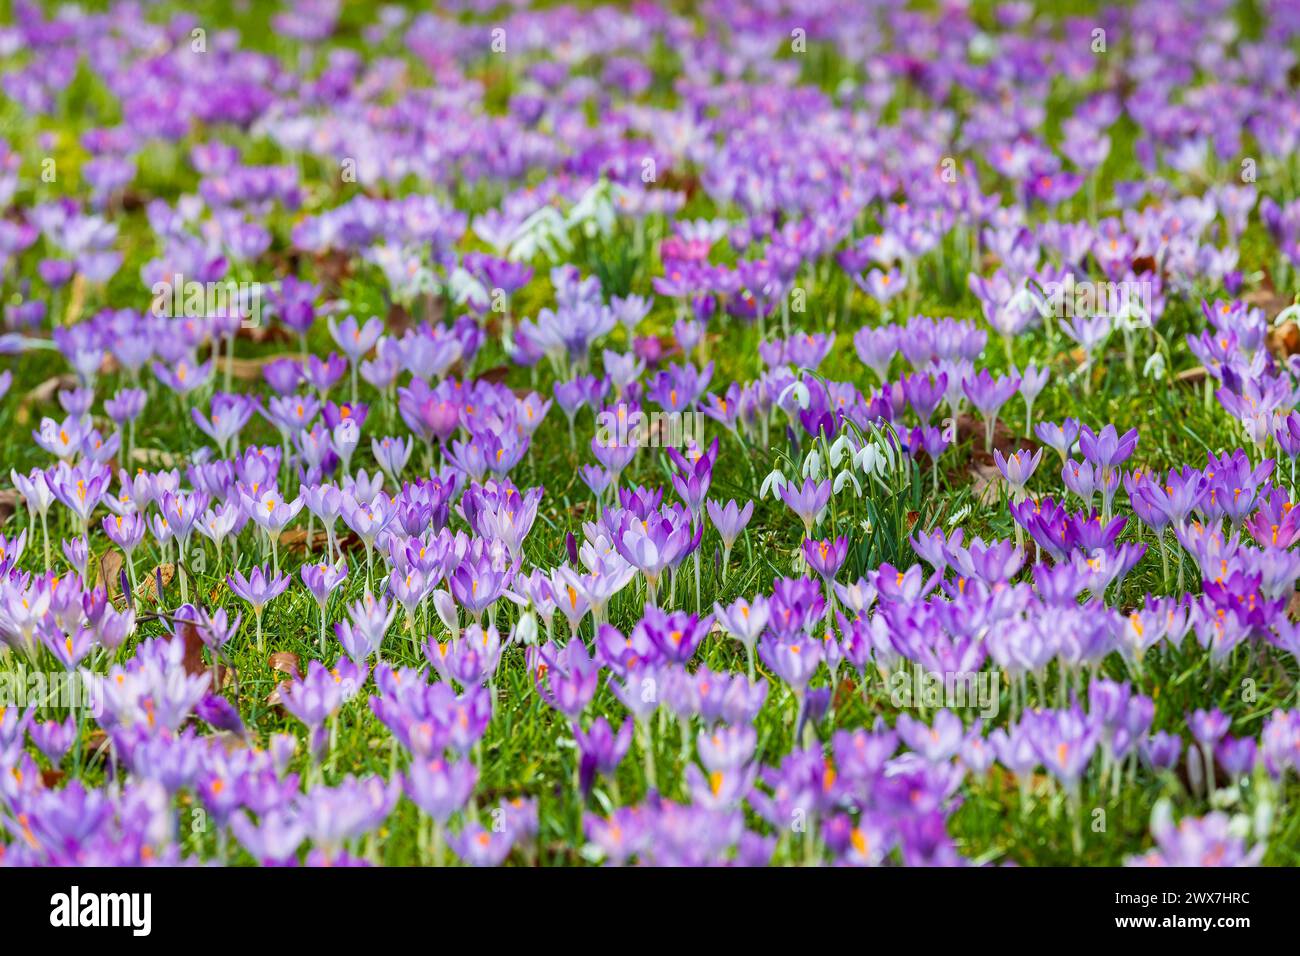 Krokusse crocus in Blüte, dazwischen blühen ein paar Schneeglöckchen Galanthus *** crocchi crocus in fiore, con alcune gocce di neve che fioriscono Galanthus Foto Stock